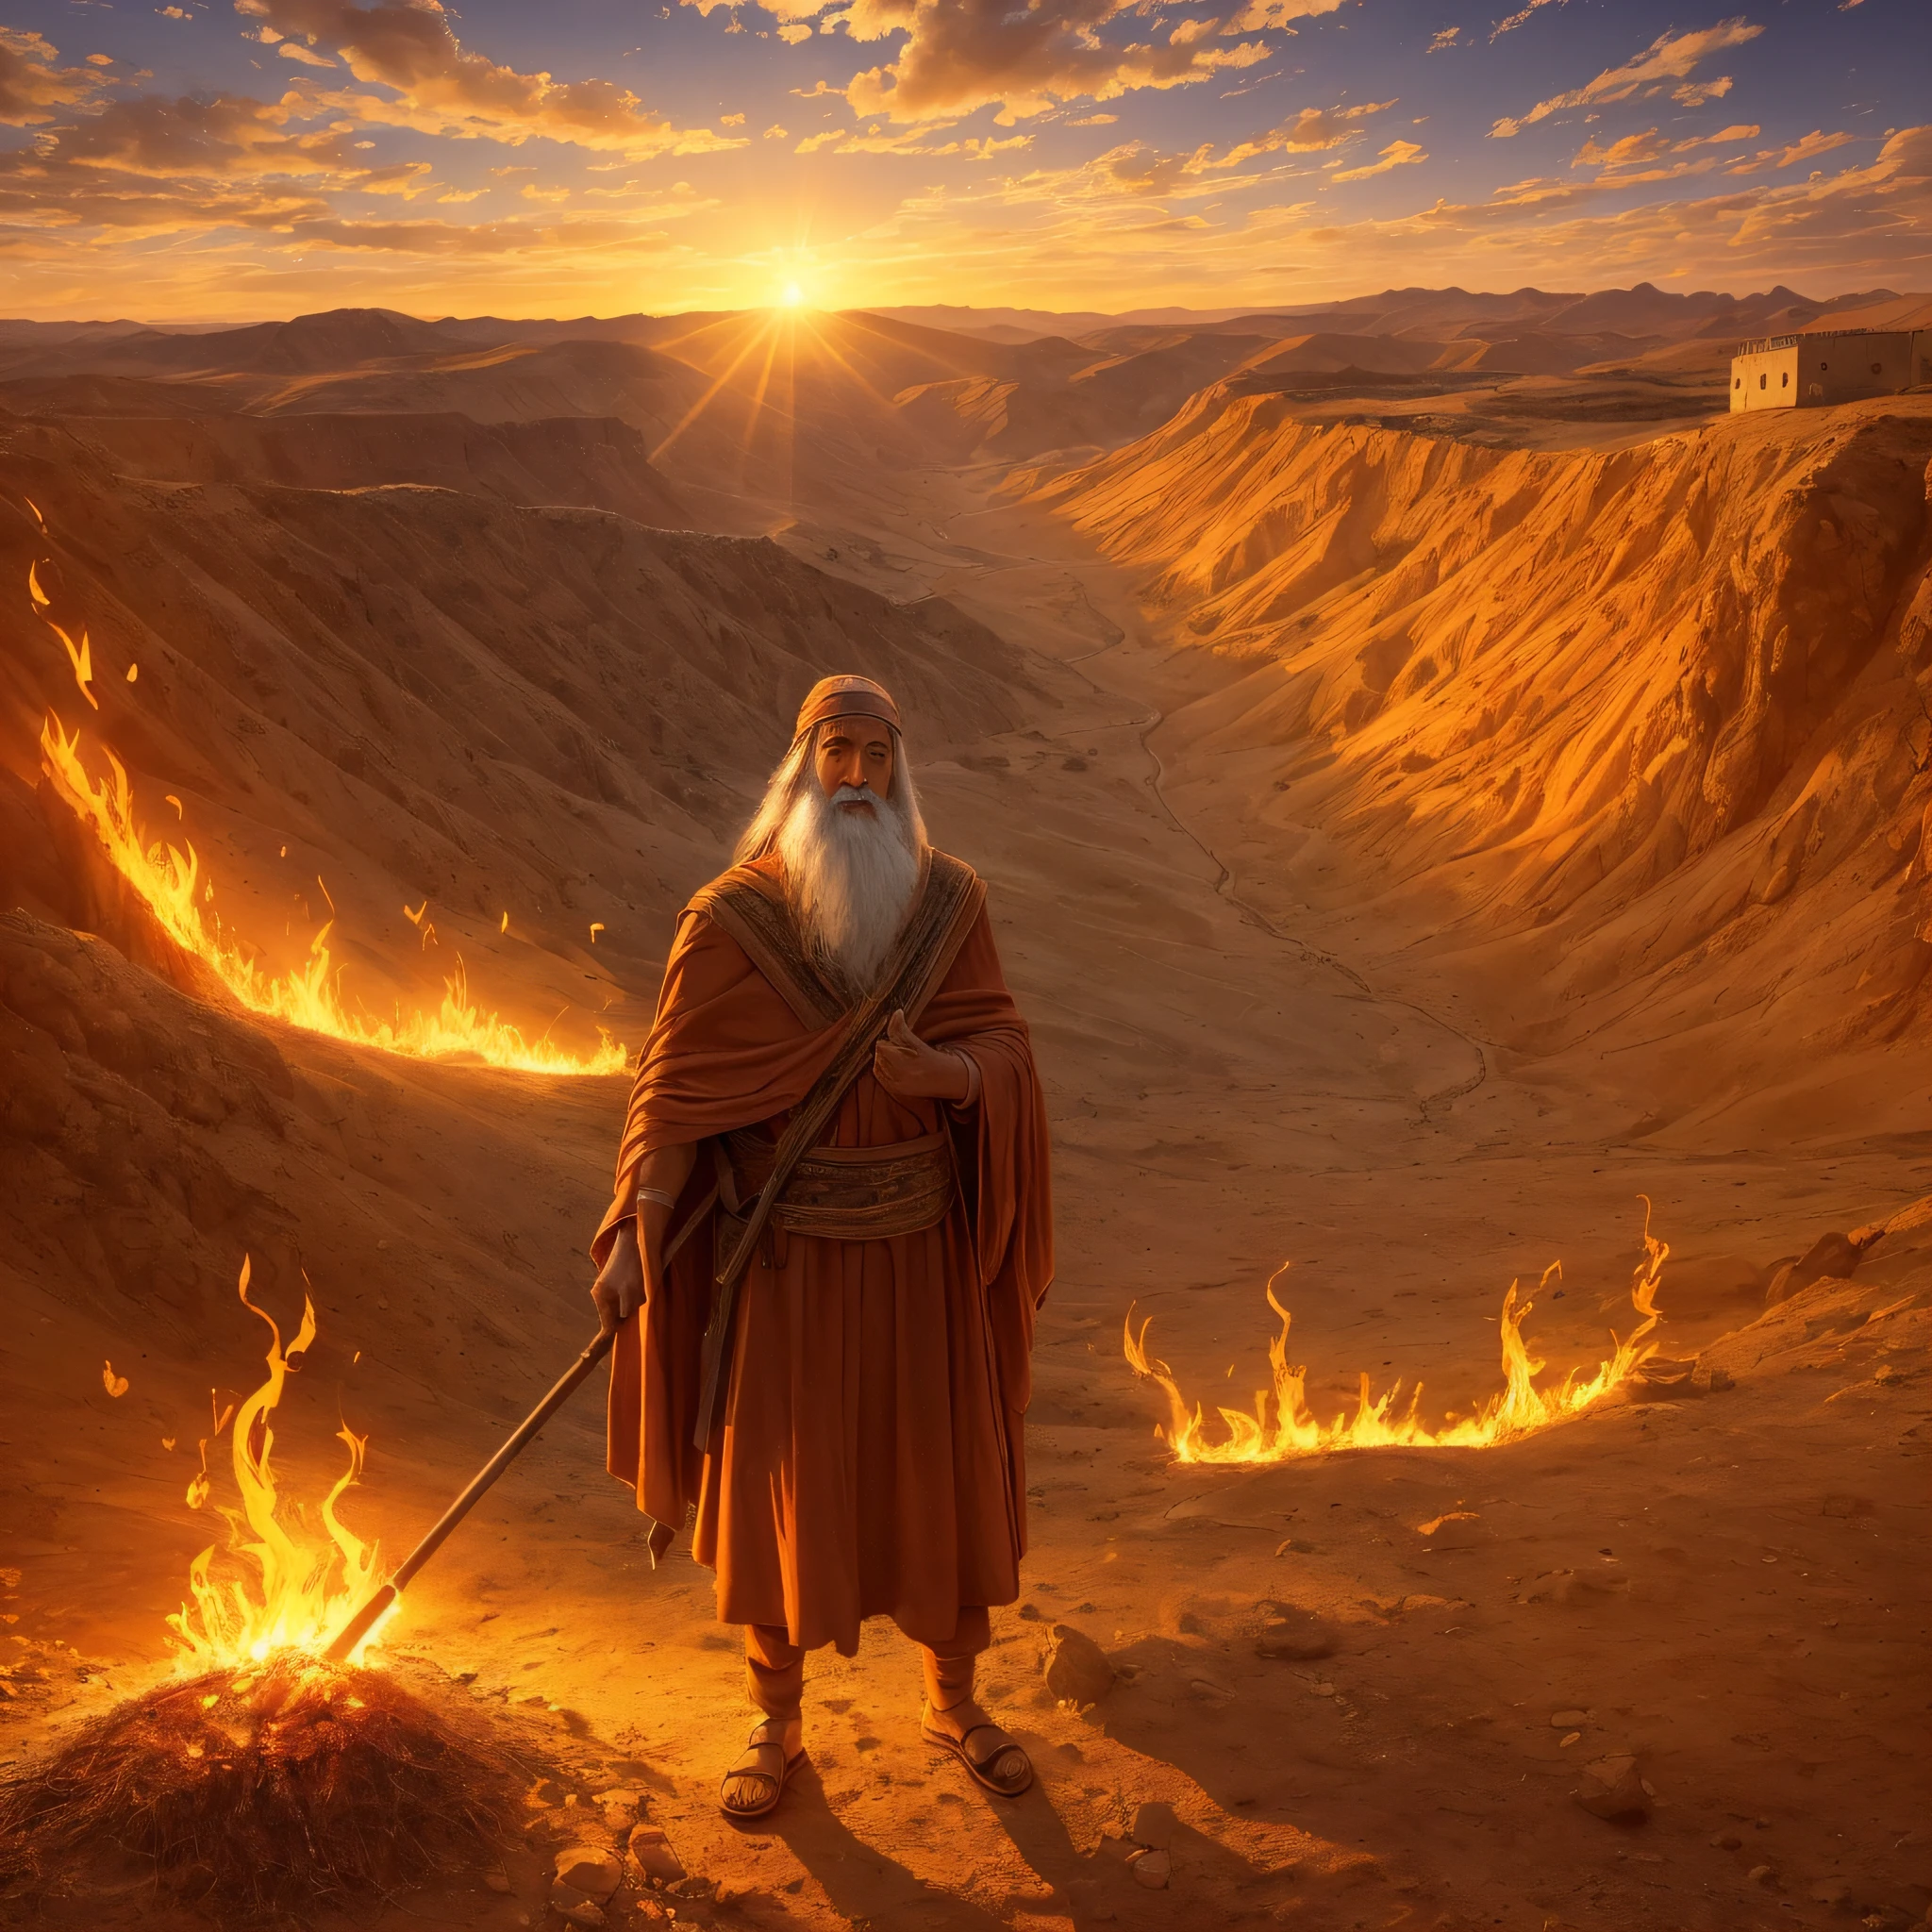 Moses vor dem brennenden Dornbusch auf dem Berg Horeb. Moses ist ein alter Mann, der als Hirte verkleidet ist. Der Busch ist hell, lebendige Flammen, aber es wird nicht vom Feuer verzehrt. Moses schaut mit Erstaunen und Bewunderung auf den Busch. Die Umgebung ist bergig und wüst, mit der untergehenden Sonne, die die Szene mit orangefarbenem Licht erhellt. Dieses Bild stellt den Moment dar, als Moses von Gott gerufen wird, um das Volk Israel zu befreien. --auto --s2